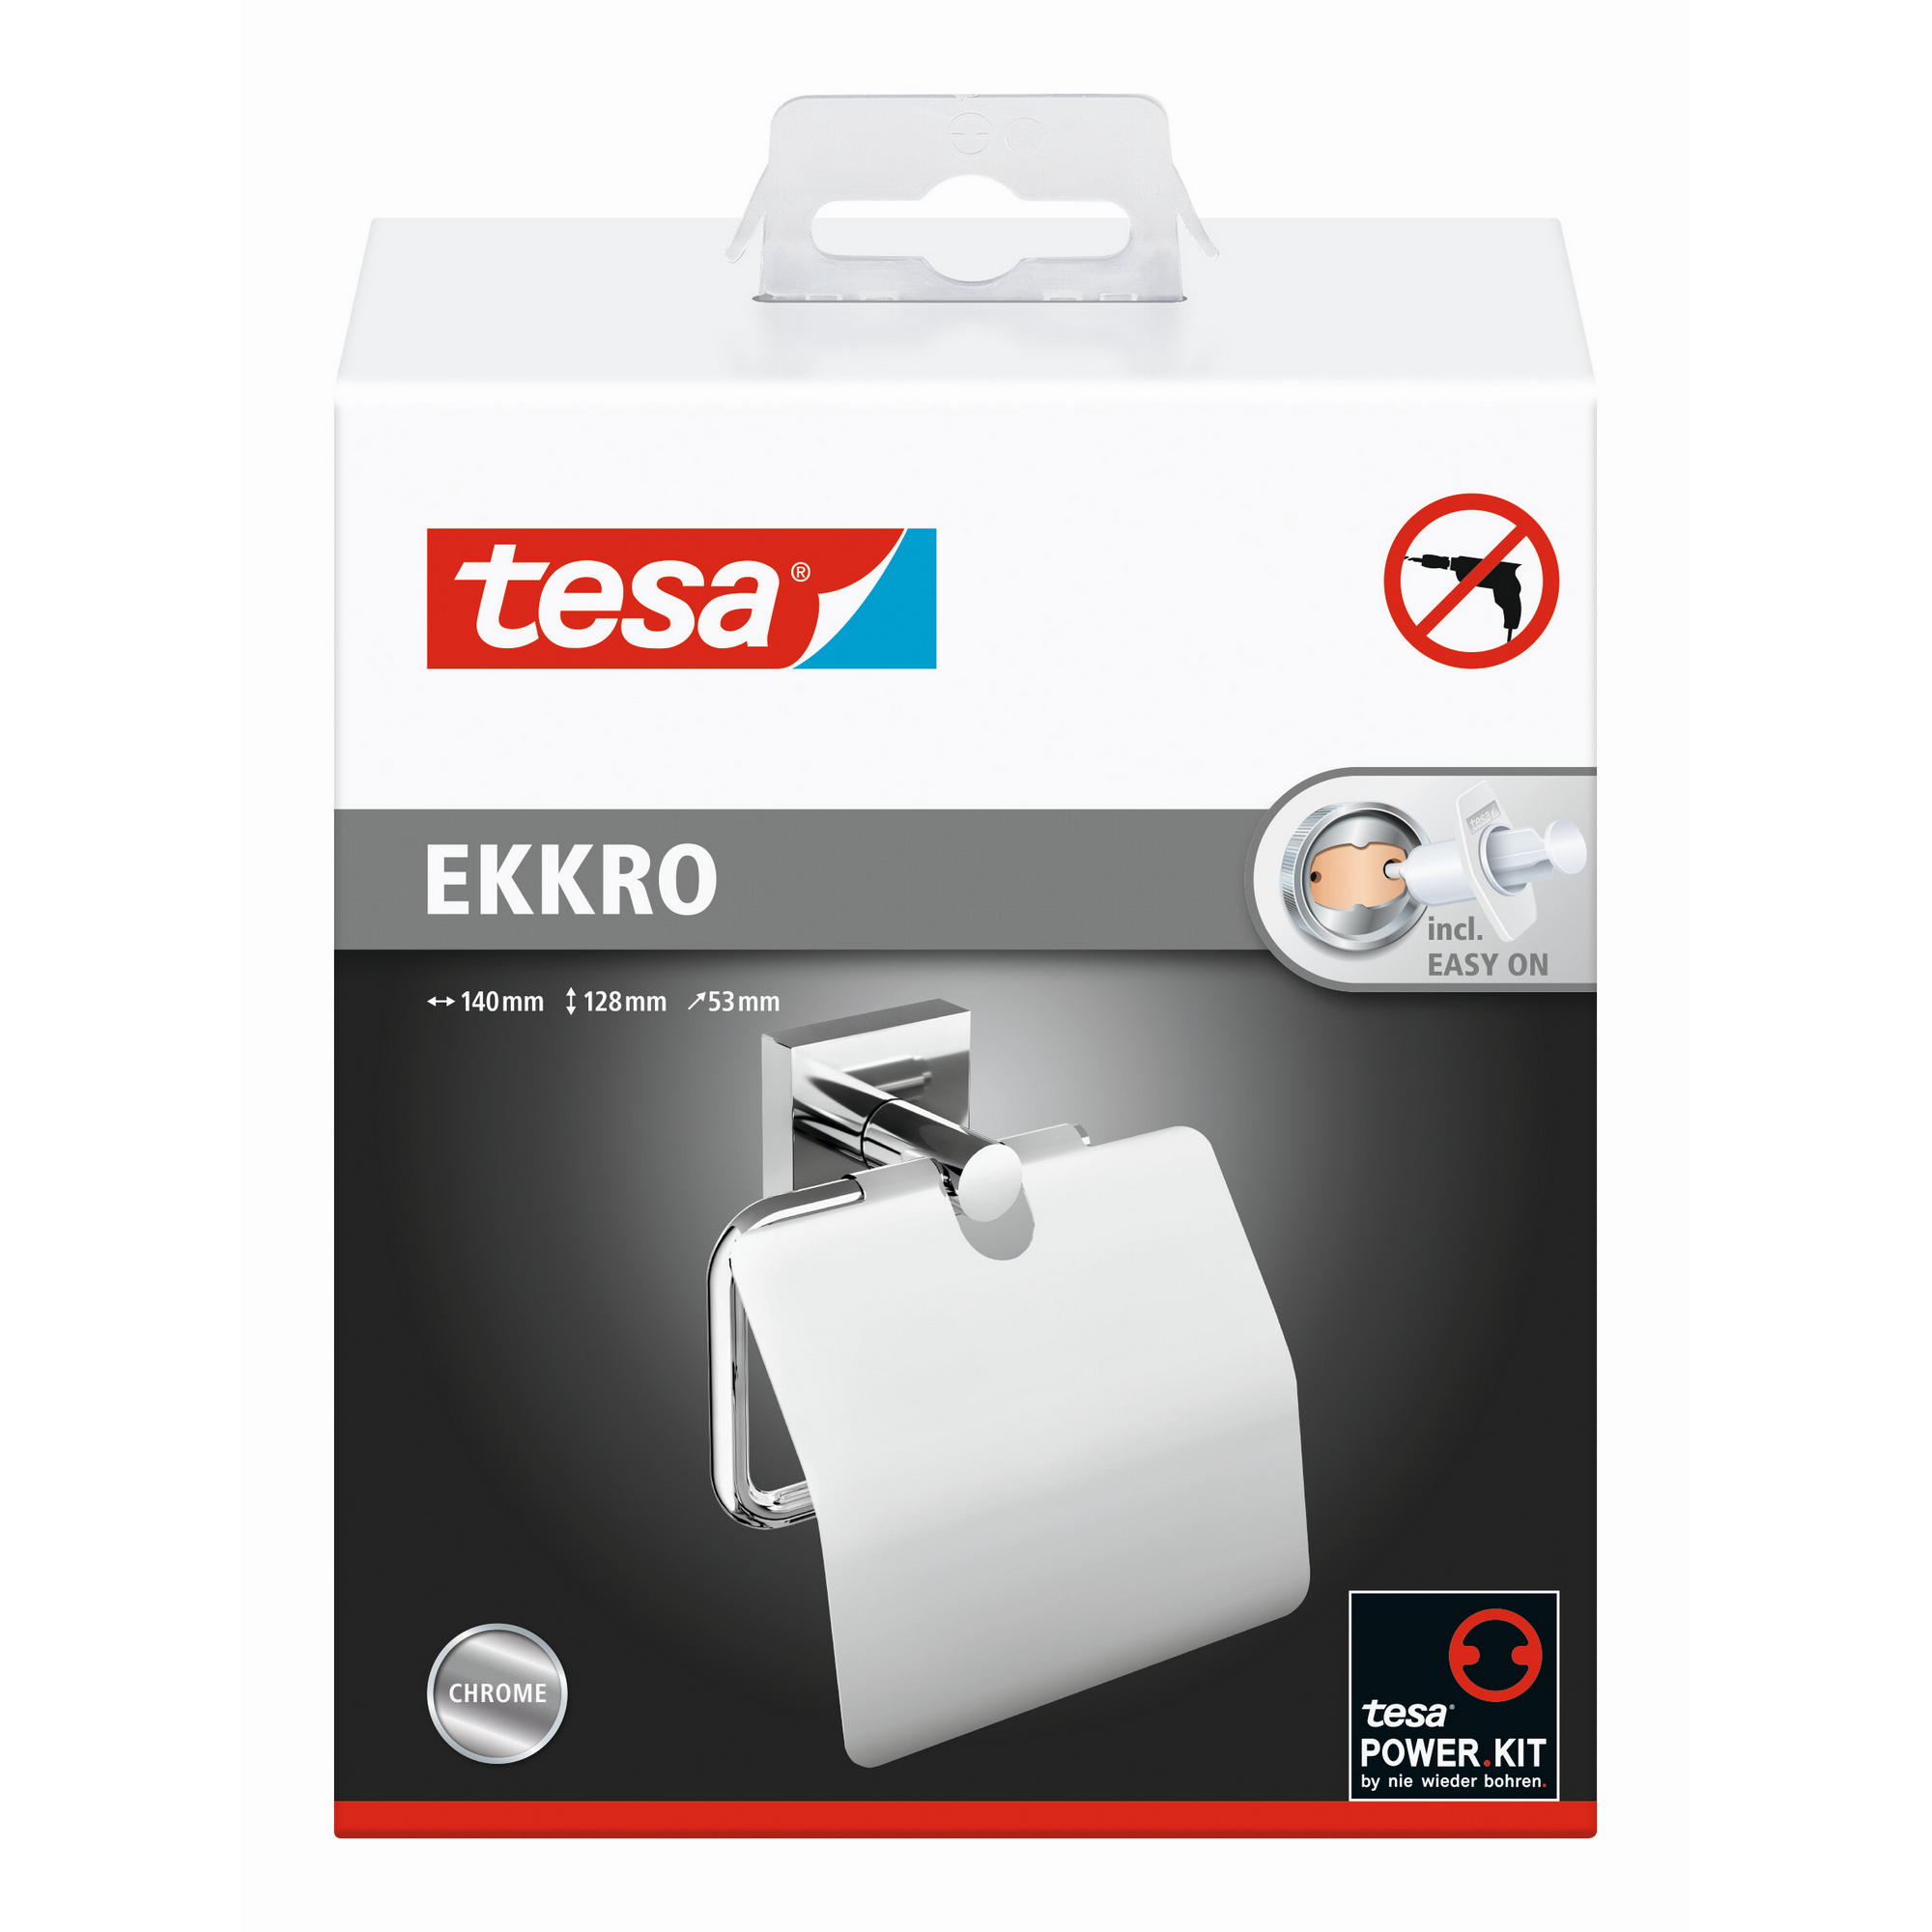 WC-Papierrollenhalter 'Ekkro' hochglanzverchromt mit Deckel mit Klebelösung  14 x 12,8 x 5,25 cm + product picture